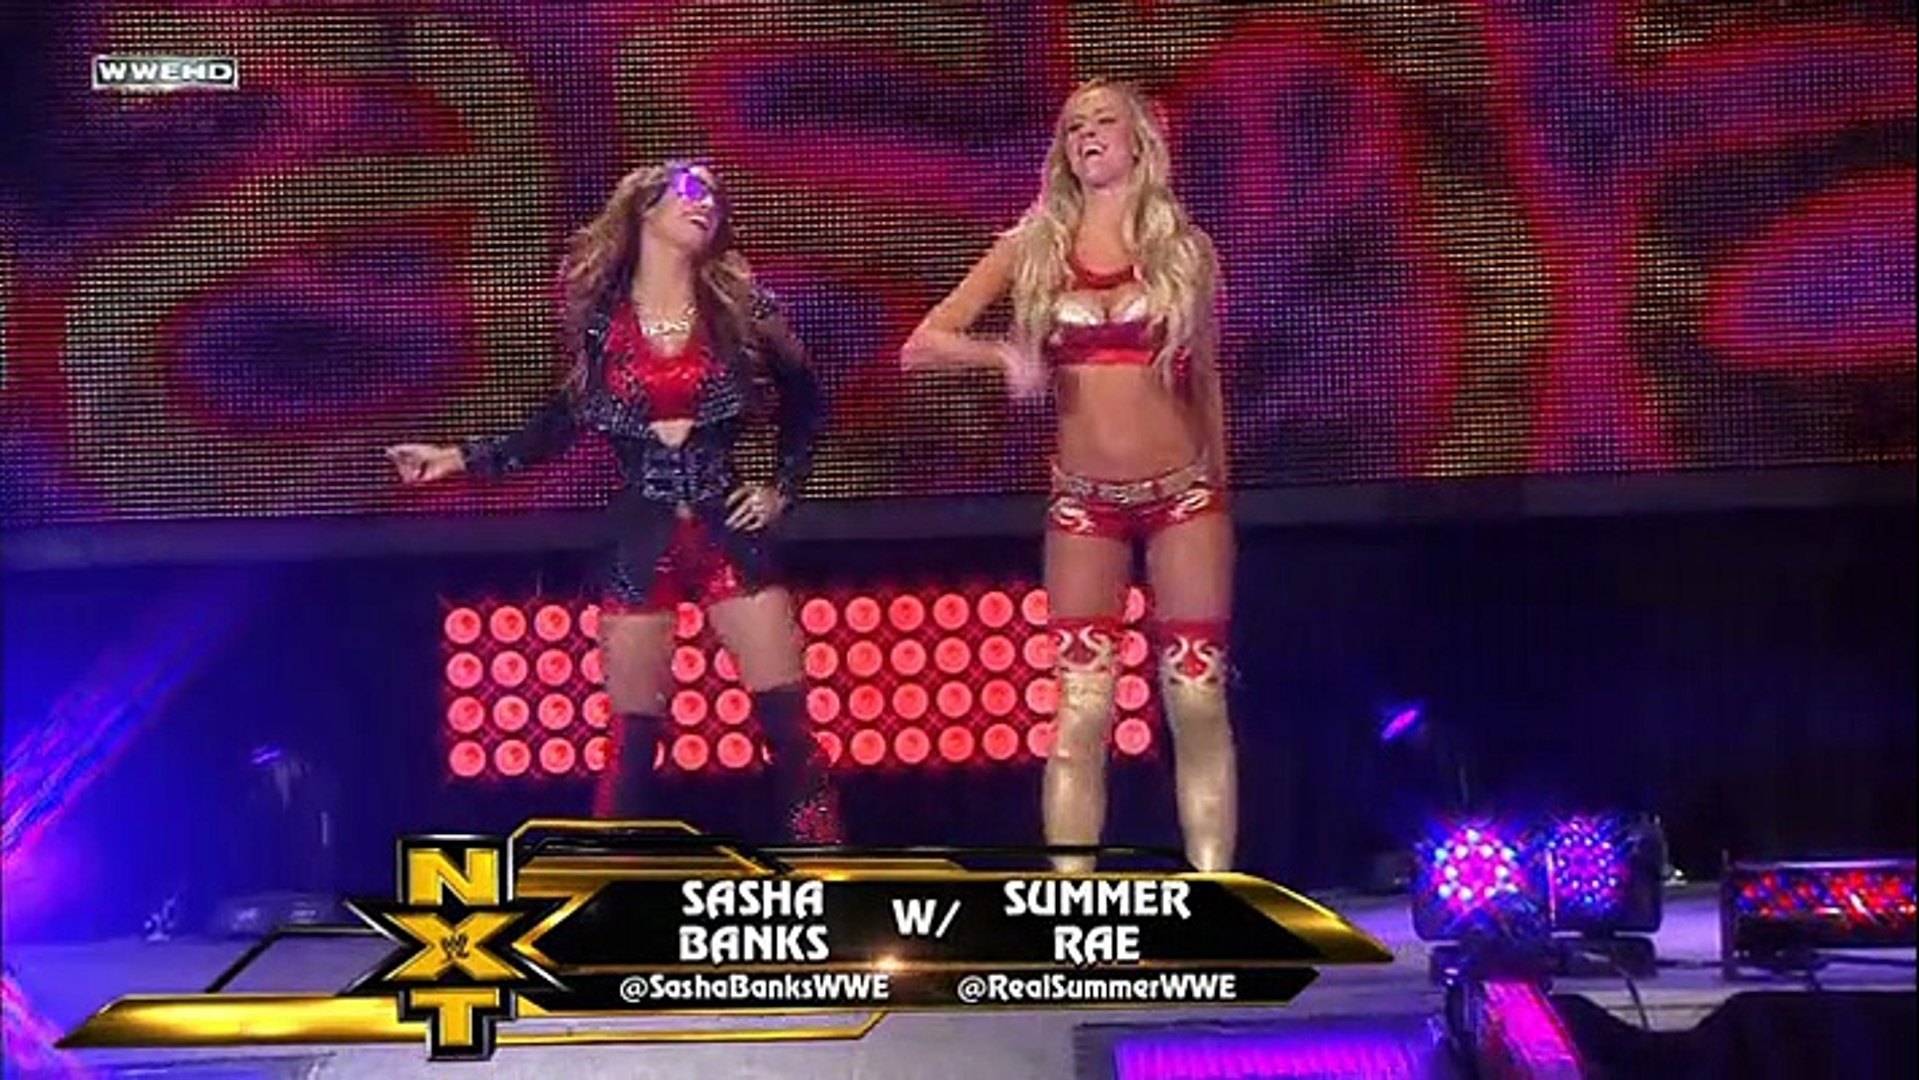 Sasha Banks (w/ Summer Rae) vs, Paige - video Dailymotion